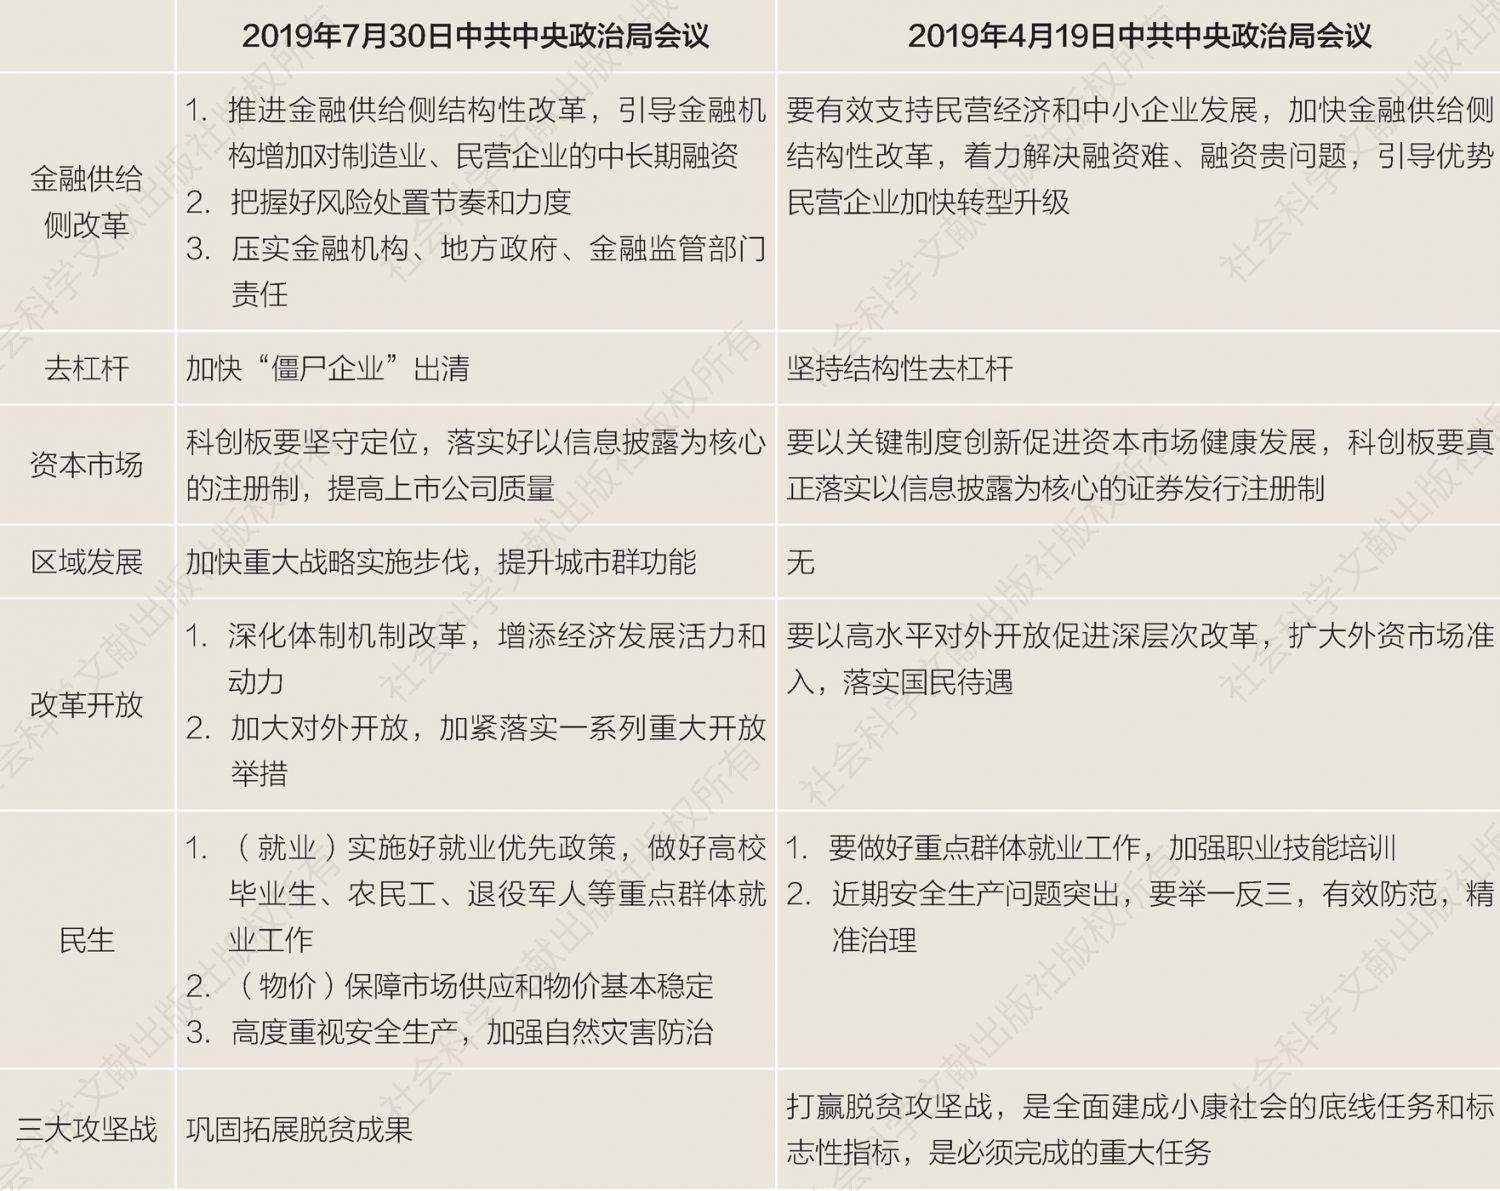 表1 2019年两次中共中央政治局会议表述比较-续表